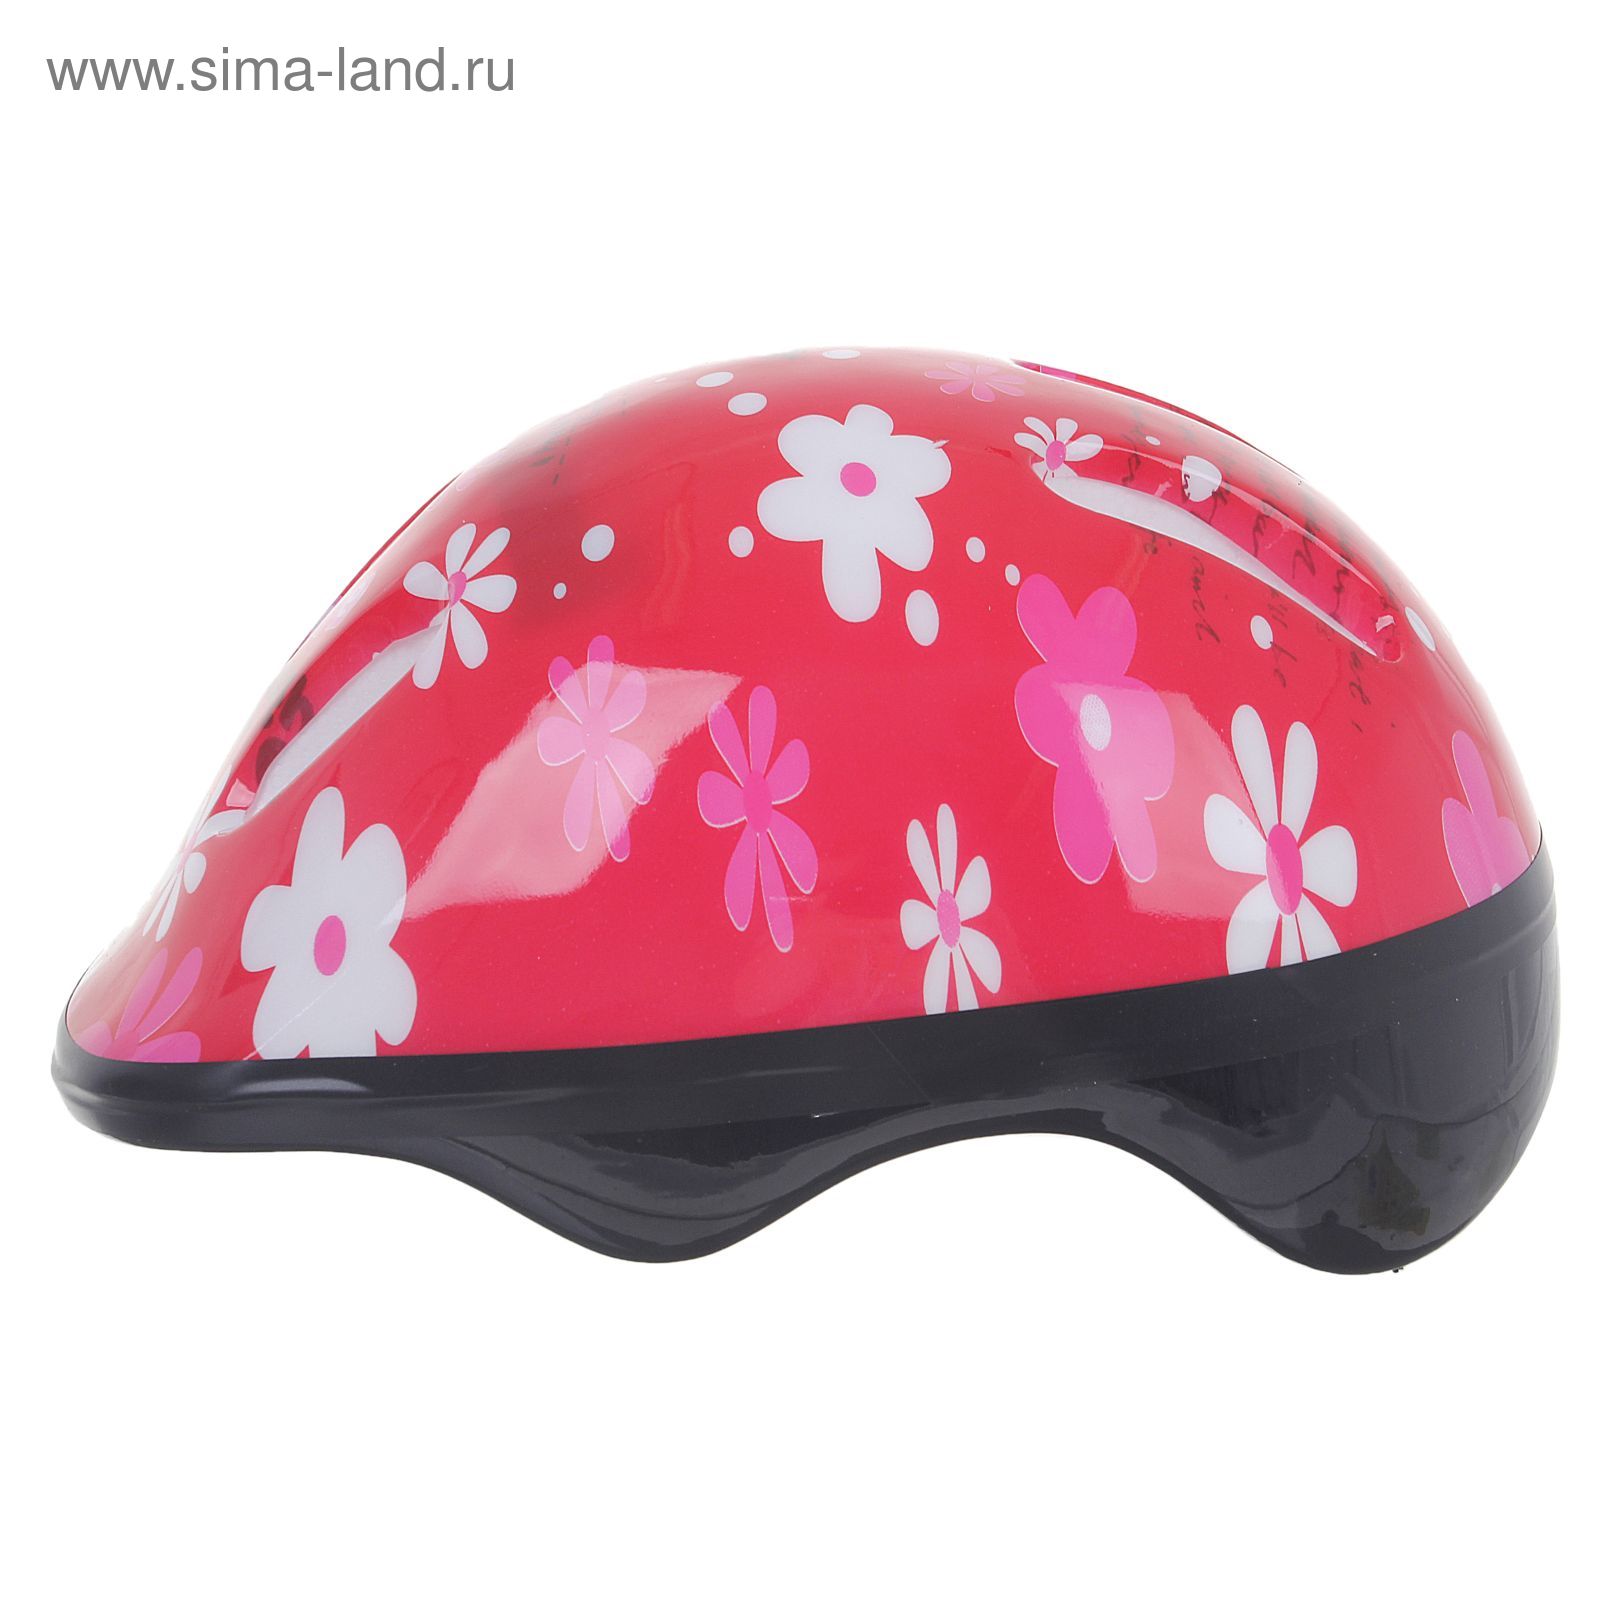 Шлем защитный OT-SH6 детский, р S (52-54 см), цвет: красный